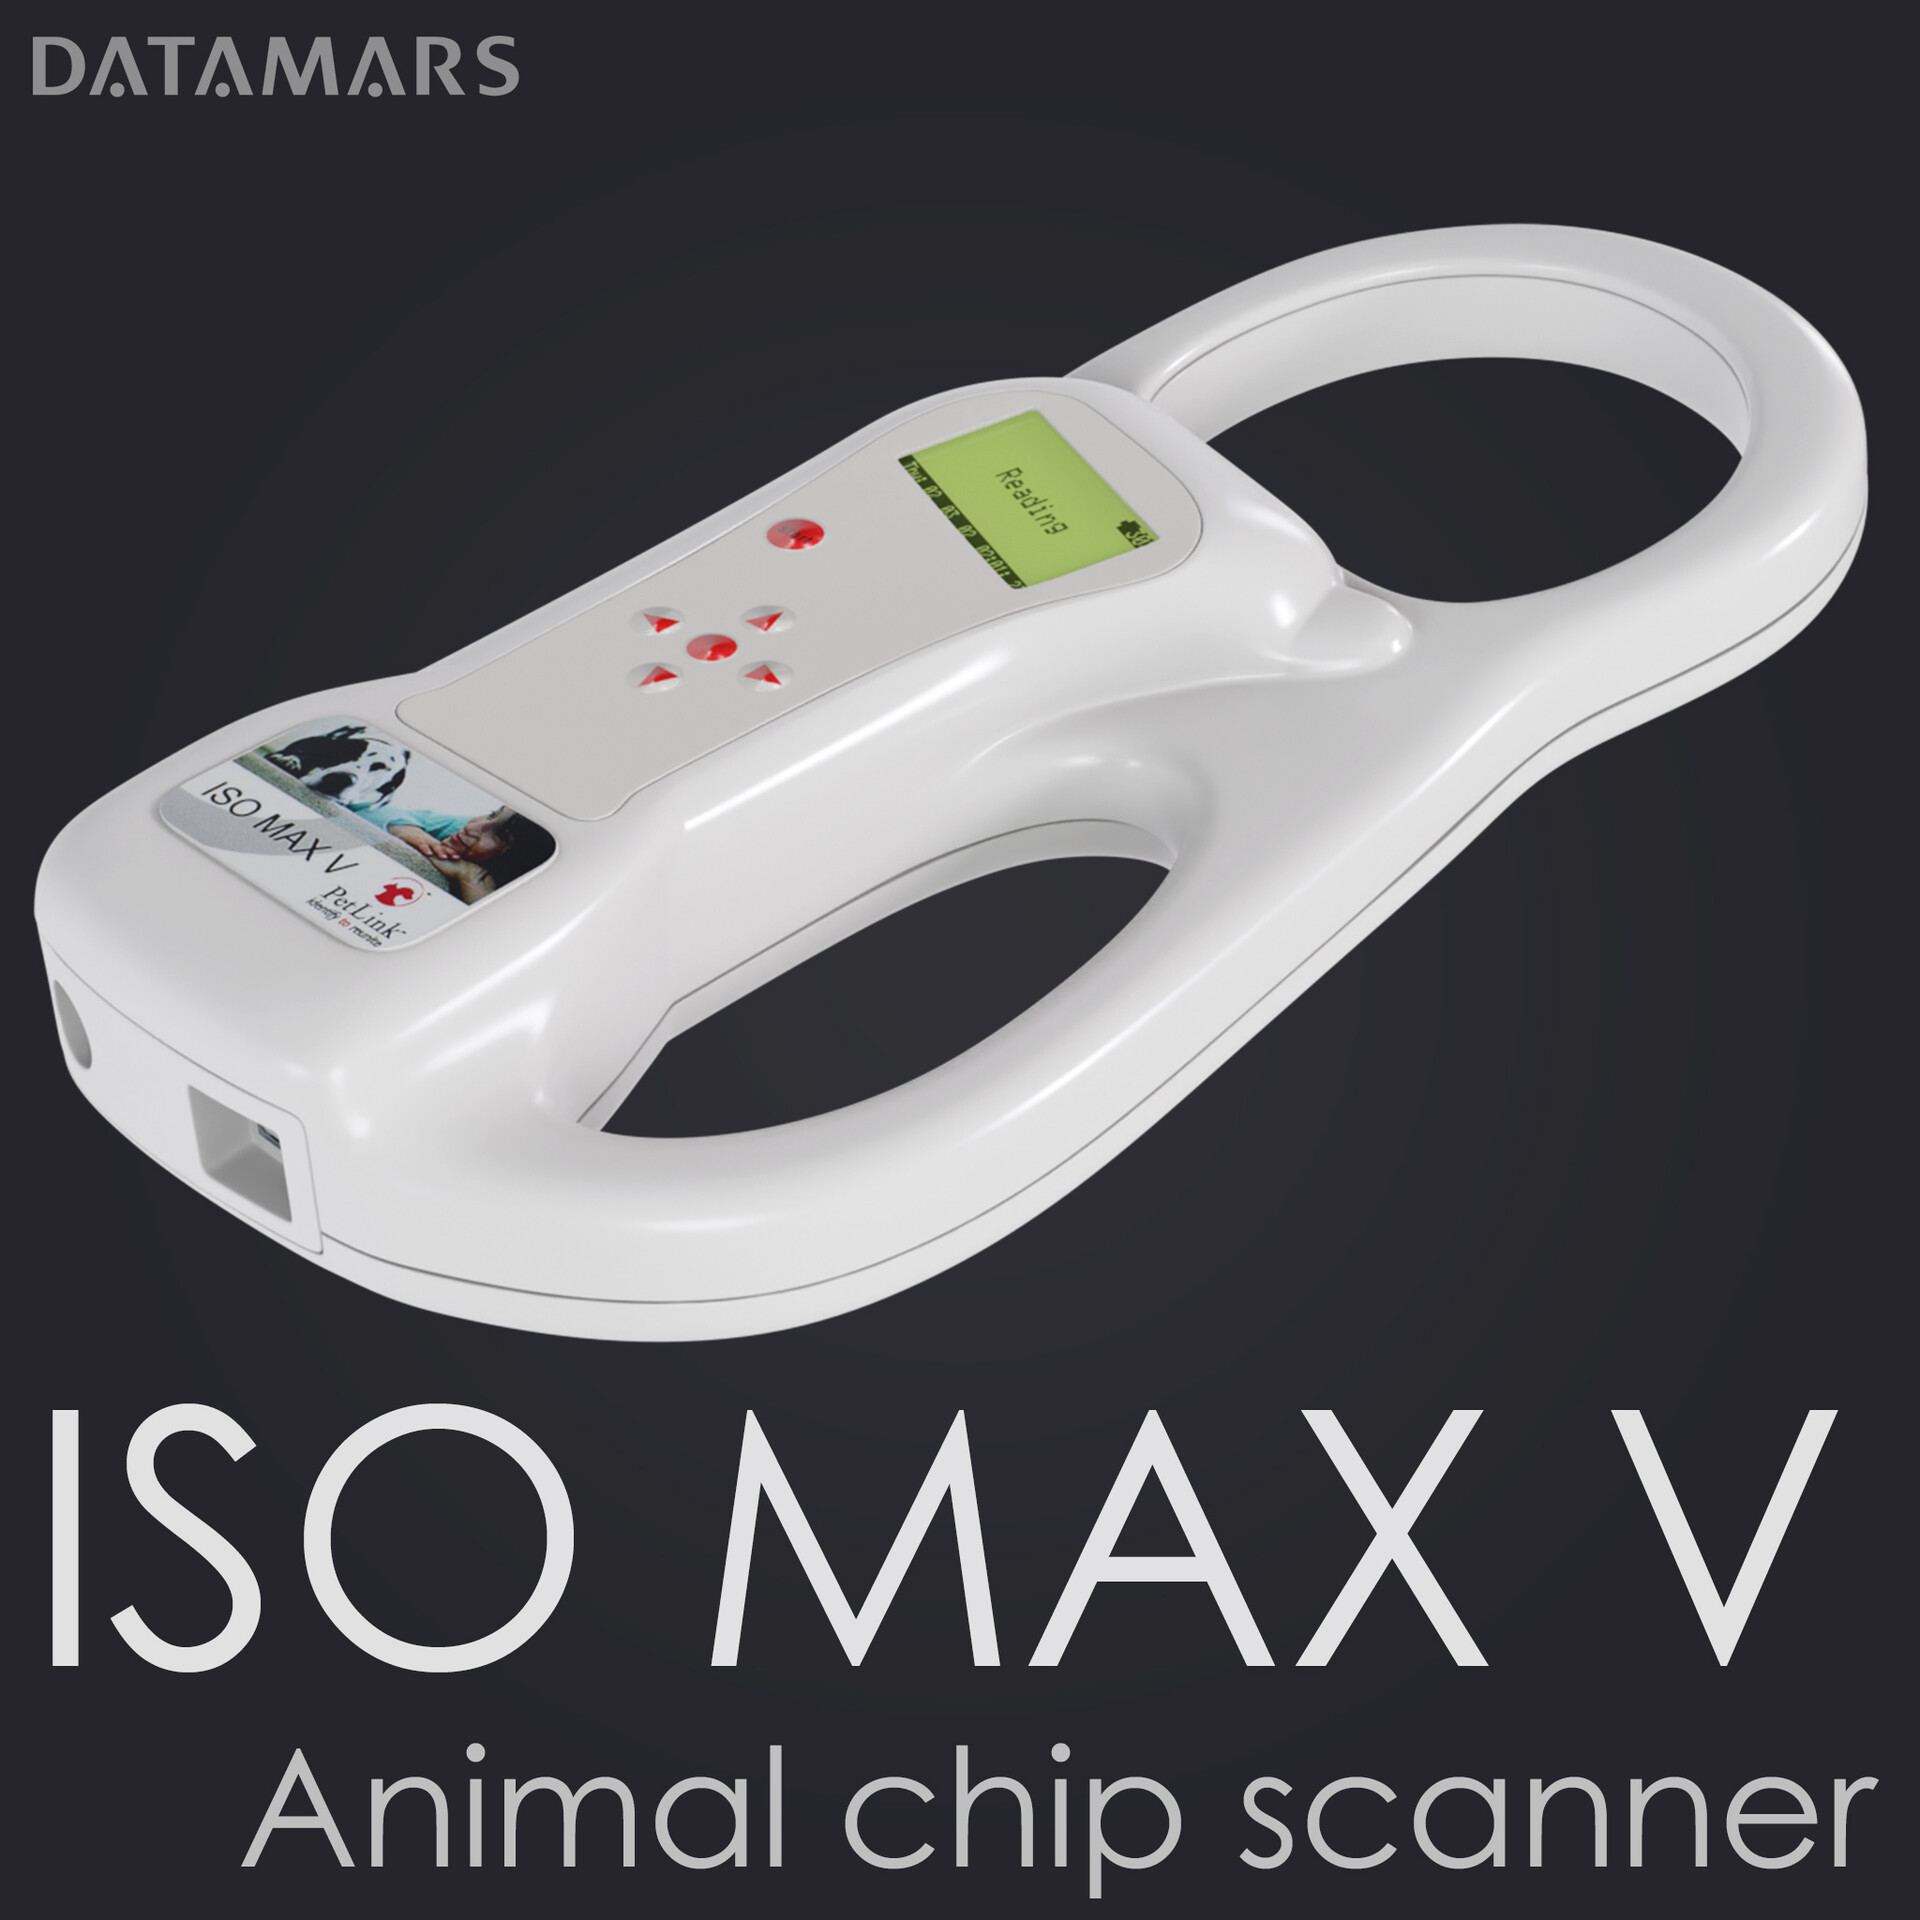 ArtStation - Animal chip scanner Datamars ISO MAX V